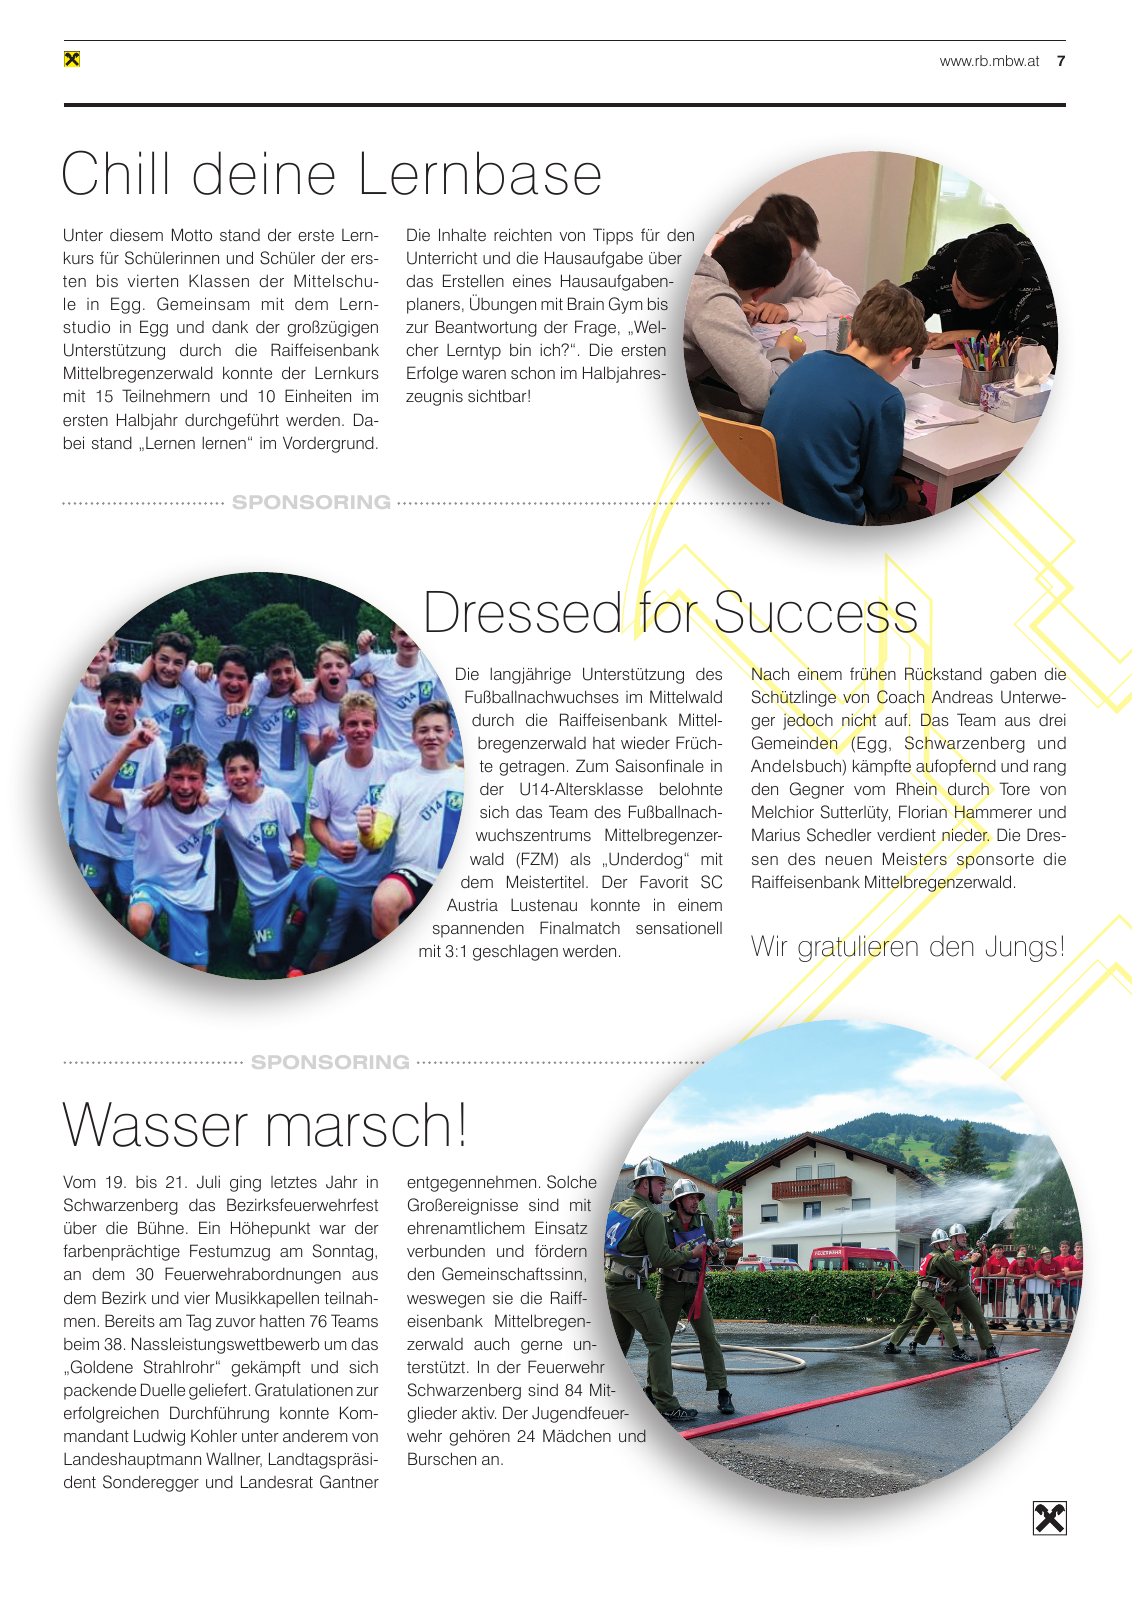 Vorschau Mitgliederzeitung RB Mittelbregenzerwald Frühjahr 2020 Seite 7